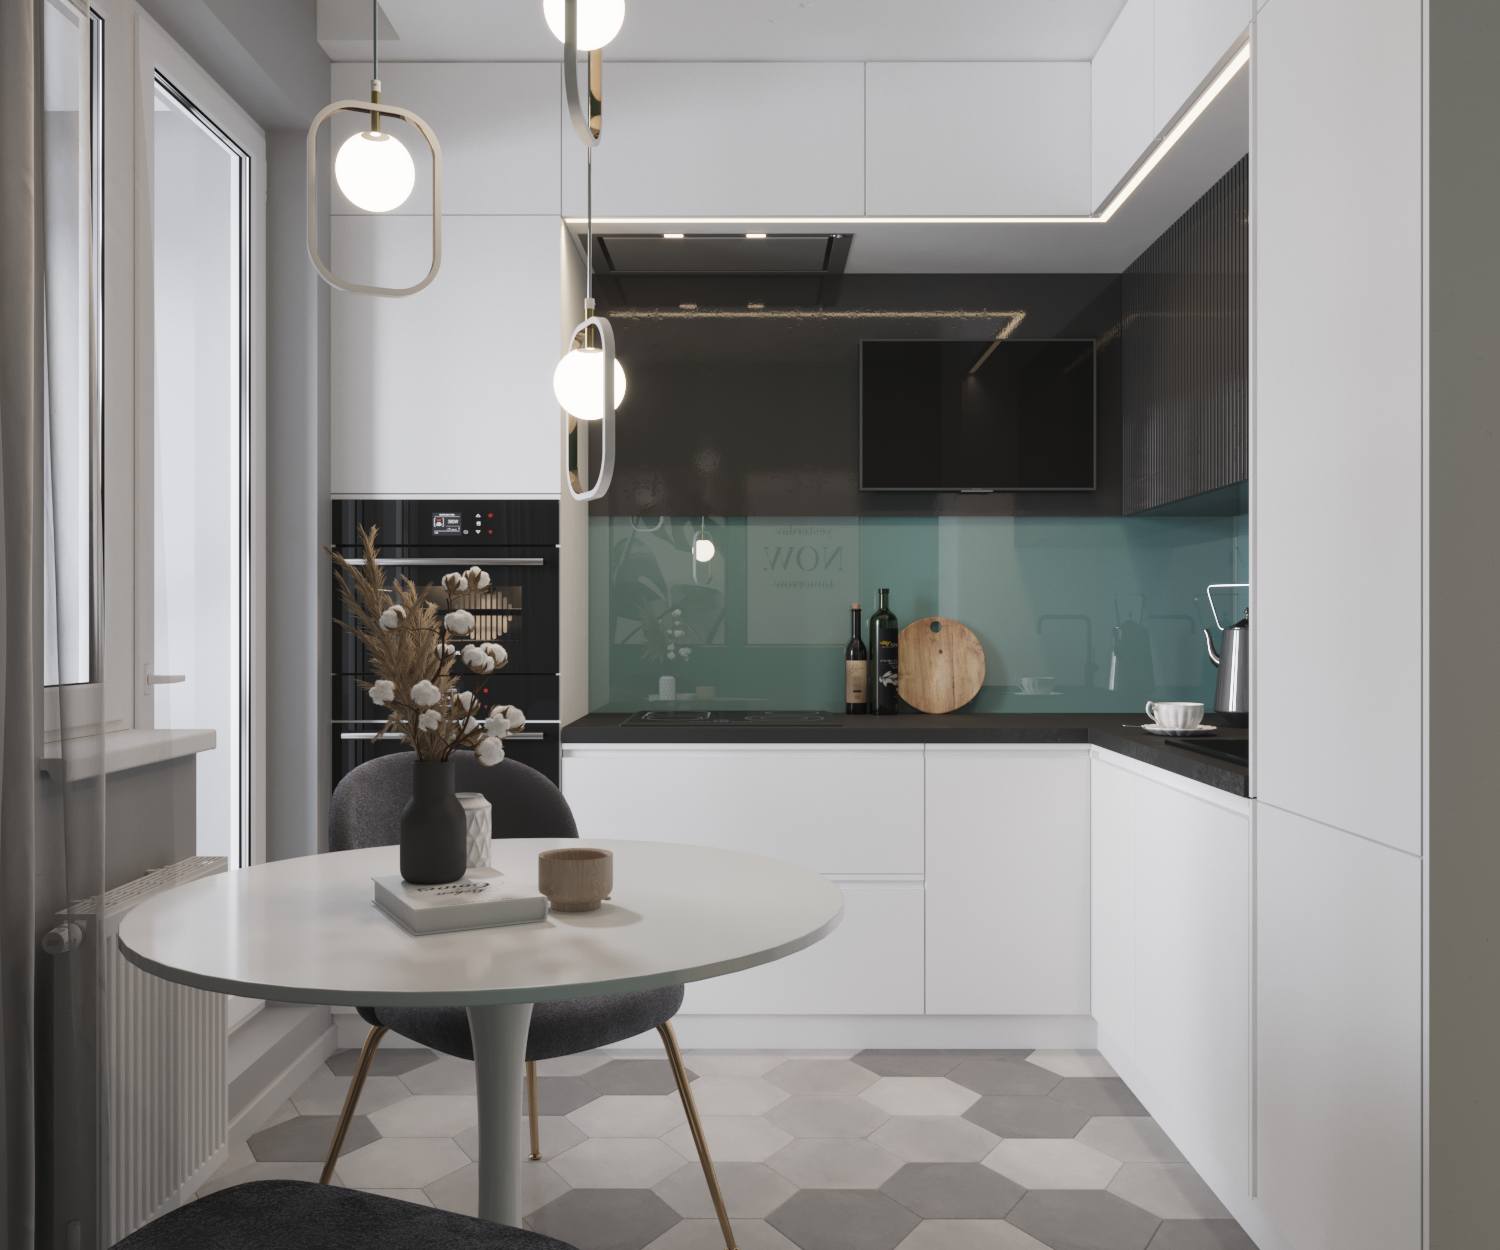 Phòng bếp thiết kế kiểu chữ L - giải pháp vừa phù hợp với cấu trúc căn hộ vừa đảm bảo sự gọn gàng, tiện nghi. Khu vực backsplash với gam màu xanh bề mặt bóng loáng như gương, phản chiếu hình ảnh xung quanh cho bếp màu trắng thêm nổi bật.